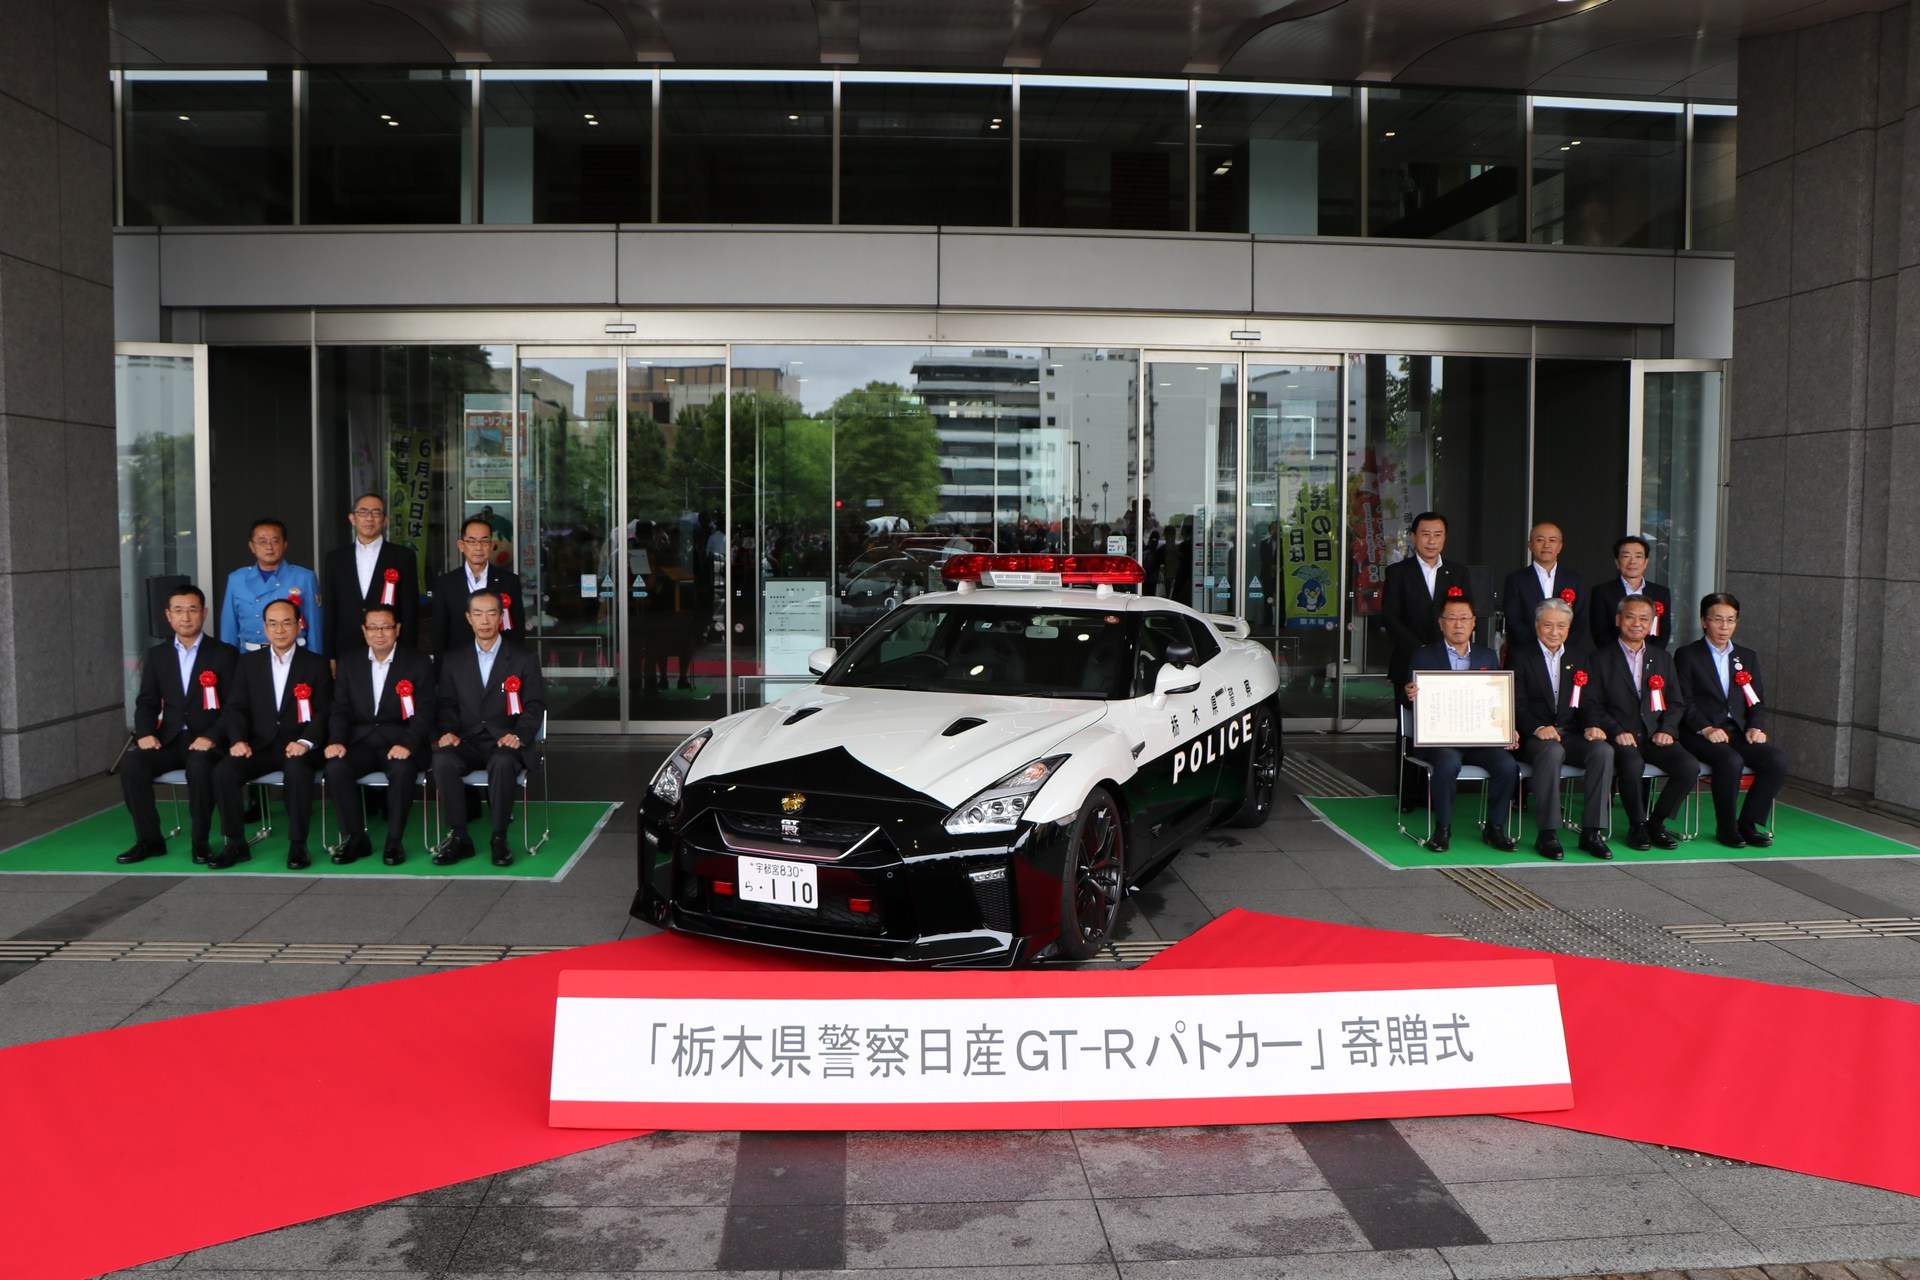 "بالصور" نيسان GT-R تدخل الخدمة رسميا بأسطول الشرطة اليابانية 35